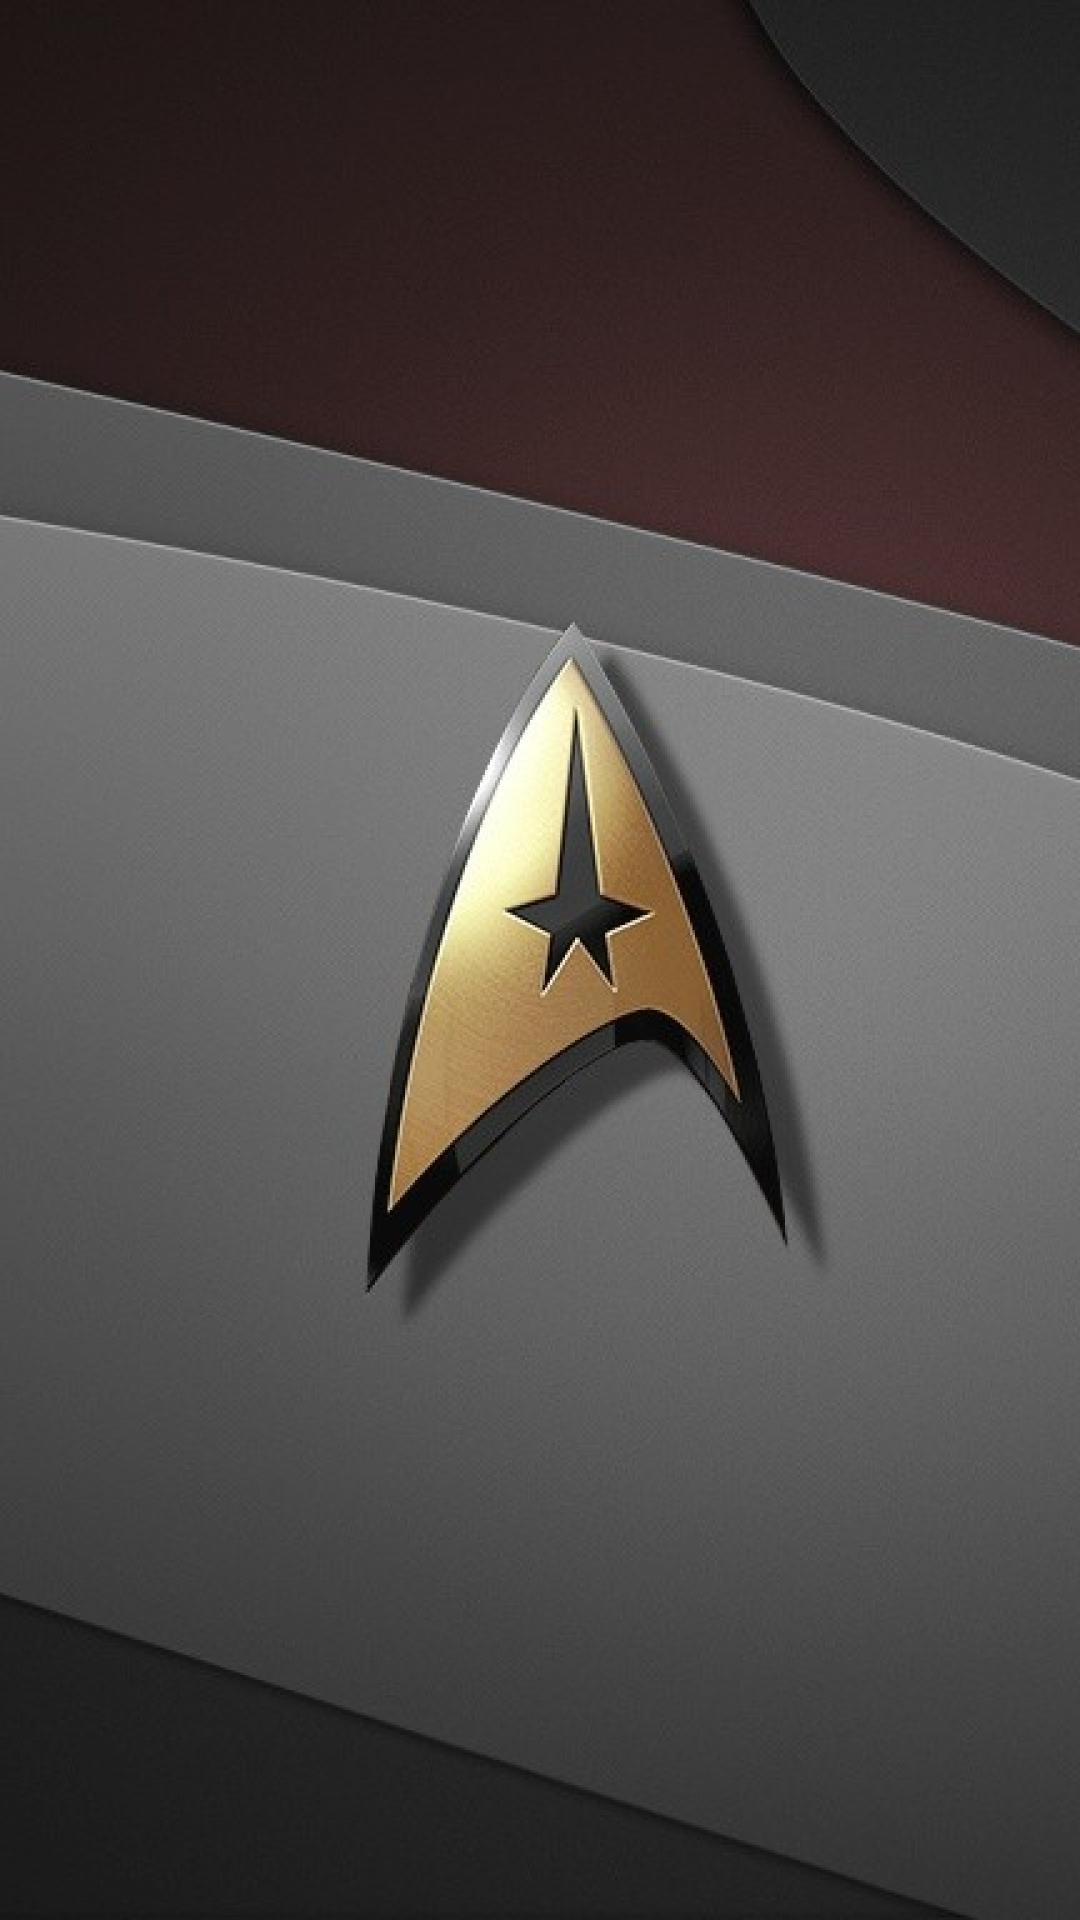 1080x1920 ScreenHeaven Star Trek Logos Badges Desktop And Mobile